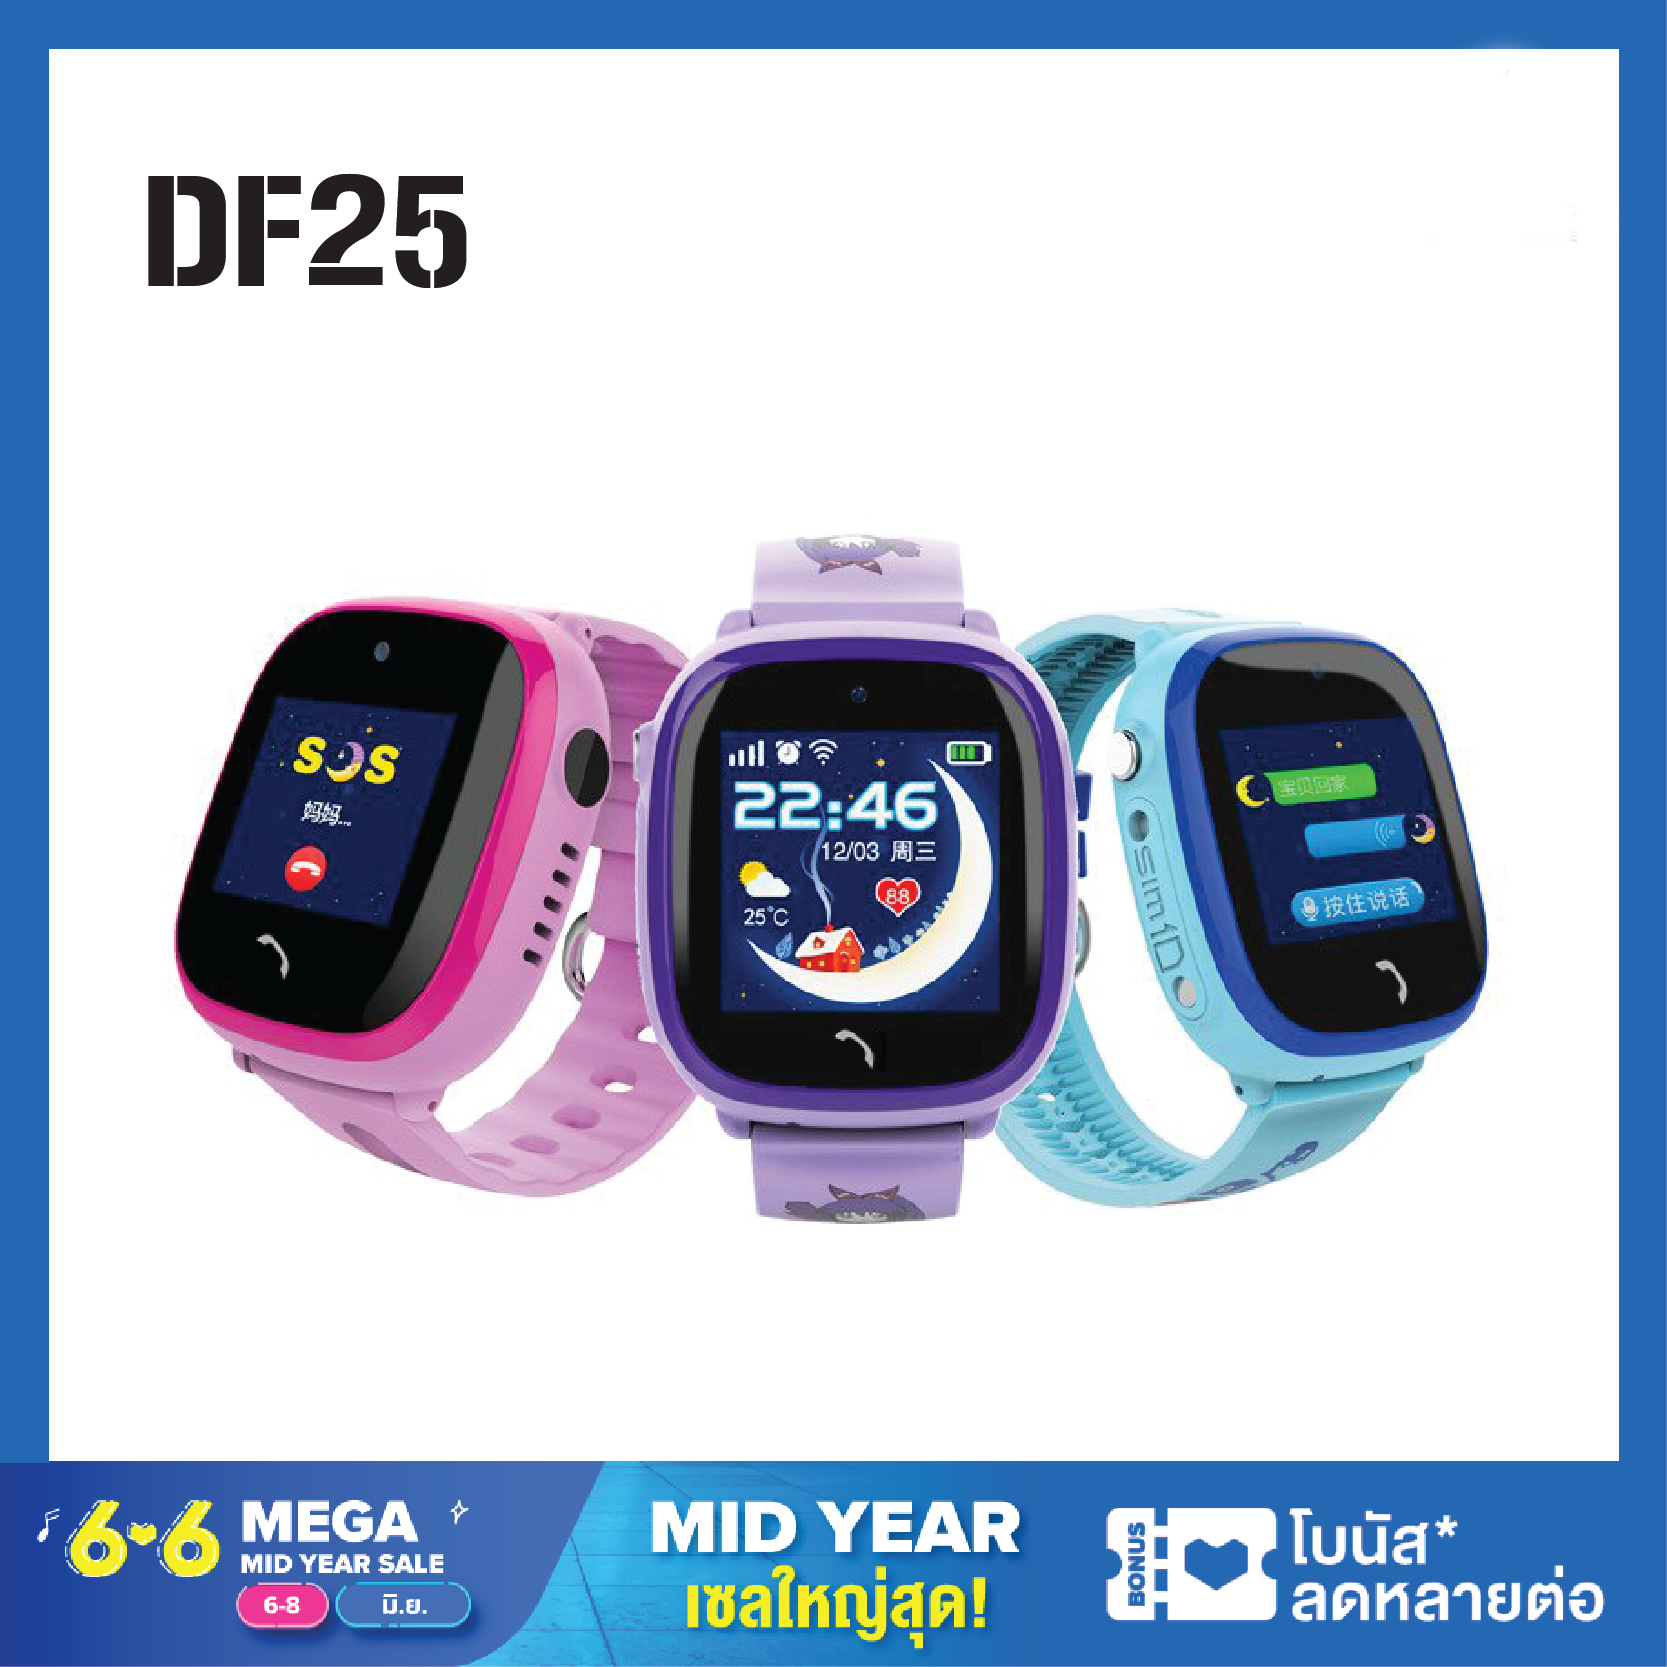 นาฬิกาเด็ก DF25 นาฬิกาโทรศัพท์เด็ก อัจฉริยะ  ใส่ซิมโทรฯได้ สมาร์ทวอท์ชเด็ก Smart Watch ไฟฉาย กล้อง บลูทูธ กันน้ำ  IP67 GPS บอกตำแหน่ง บลูทูธ พร้อมจัดส่ง